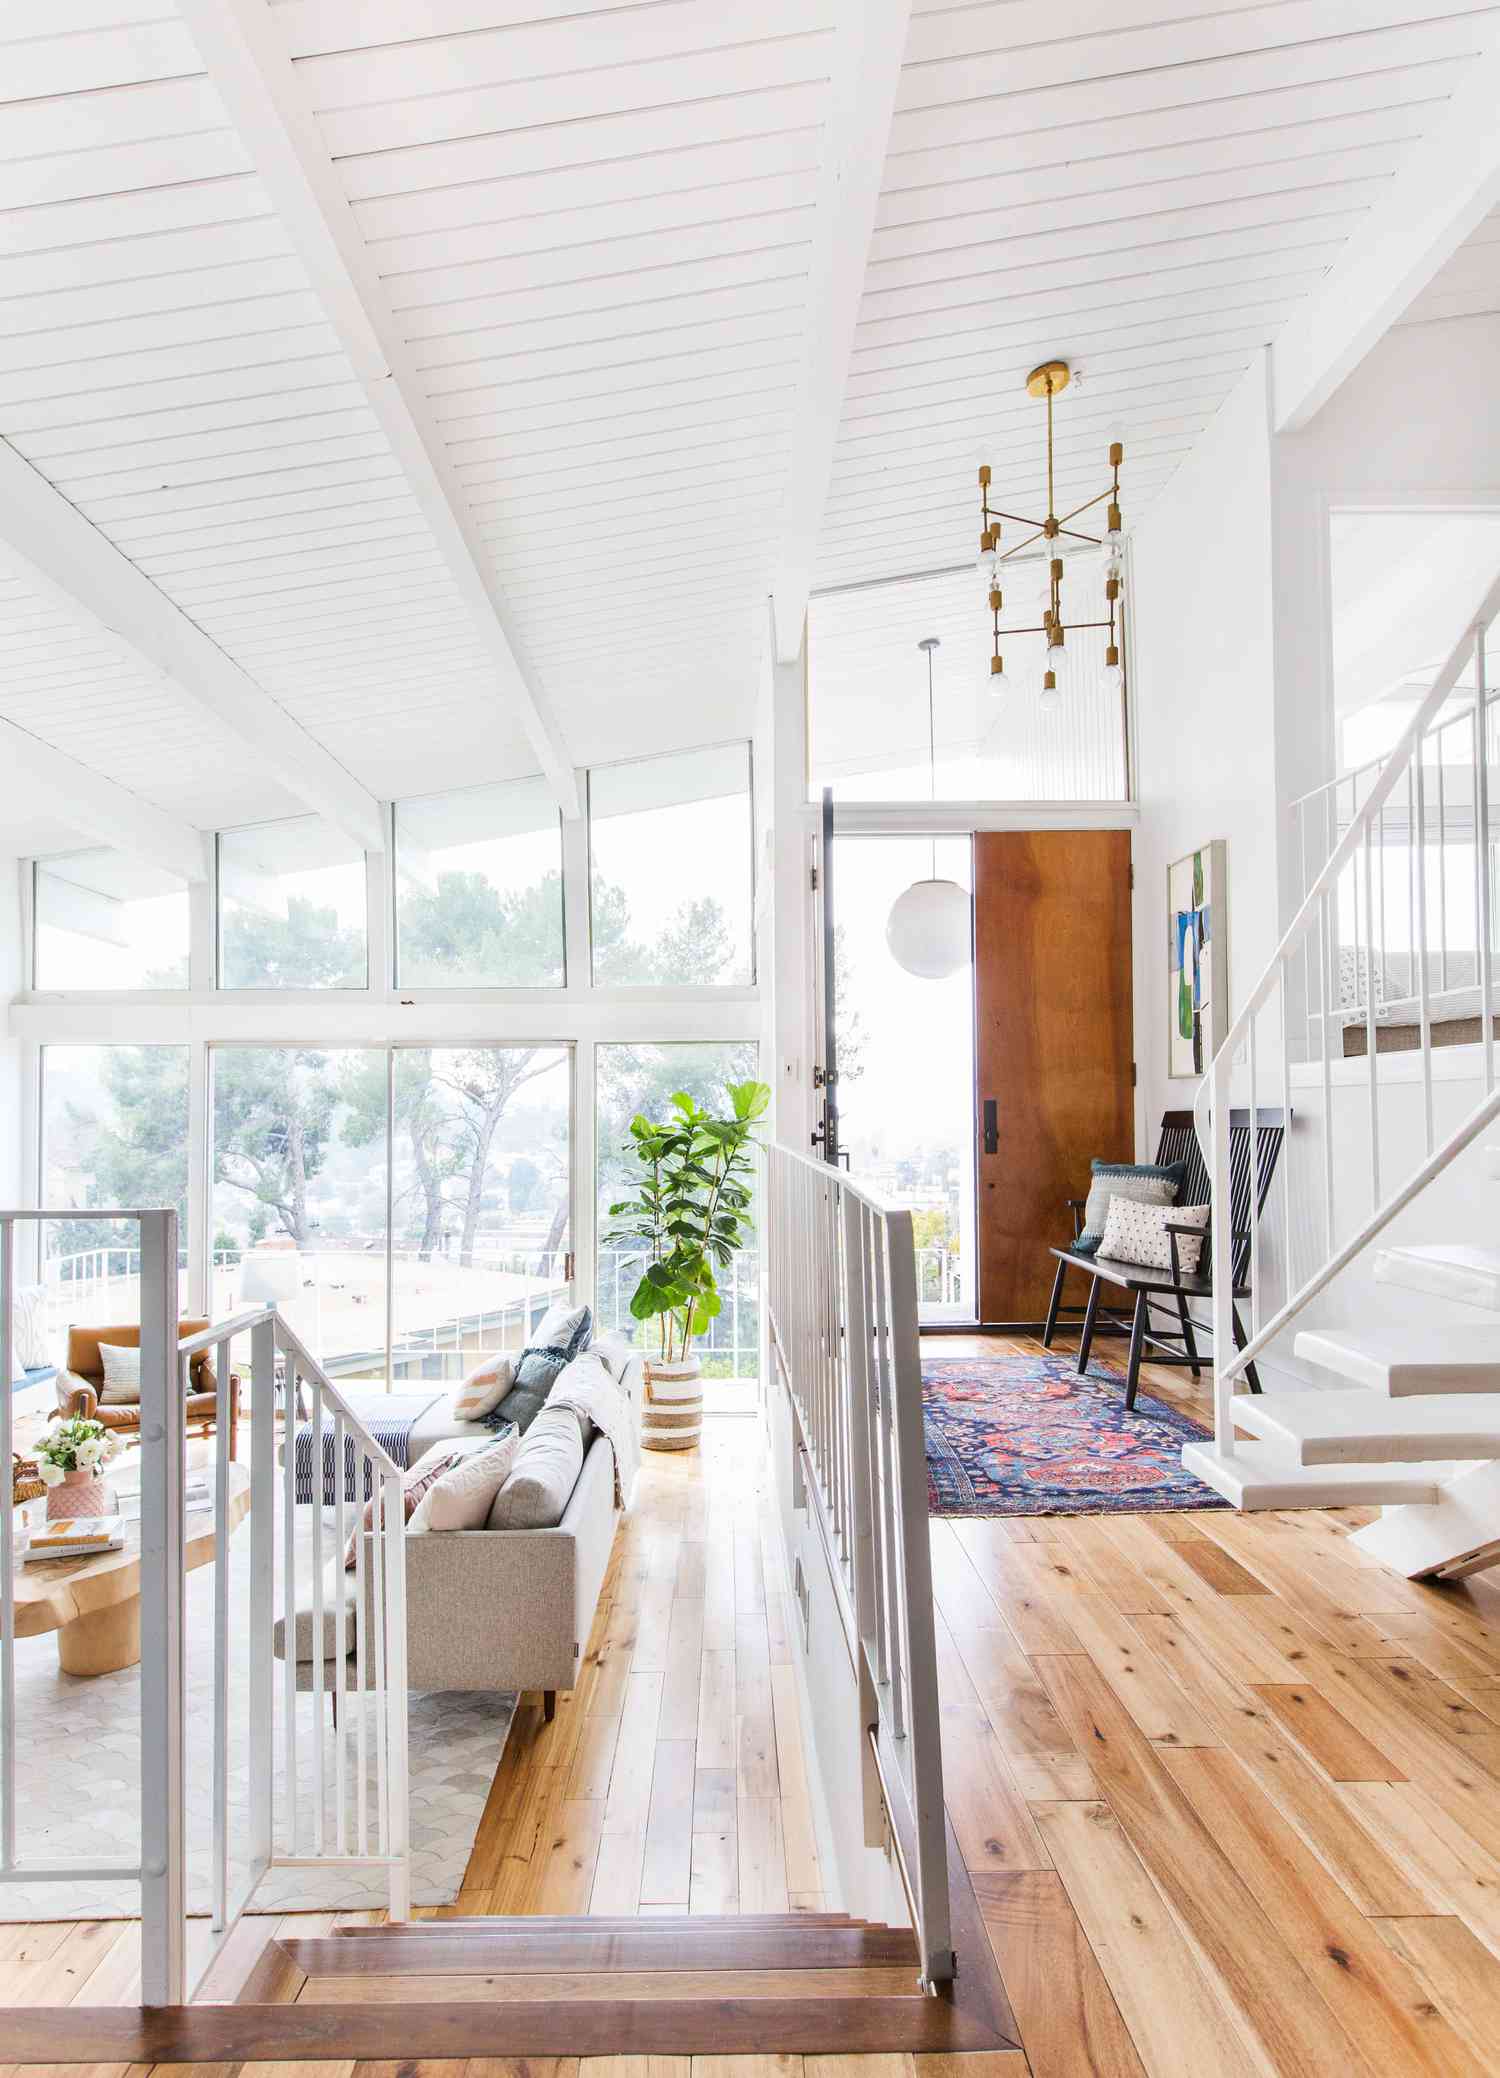 Ein weißes Zimmer hat einen Holzfußboden, der Eingangsbereich ist mit einem langen hellen Teppich ausgelegt